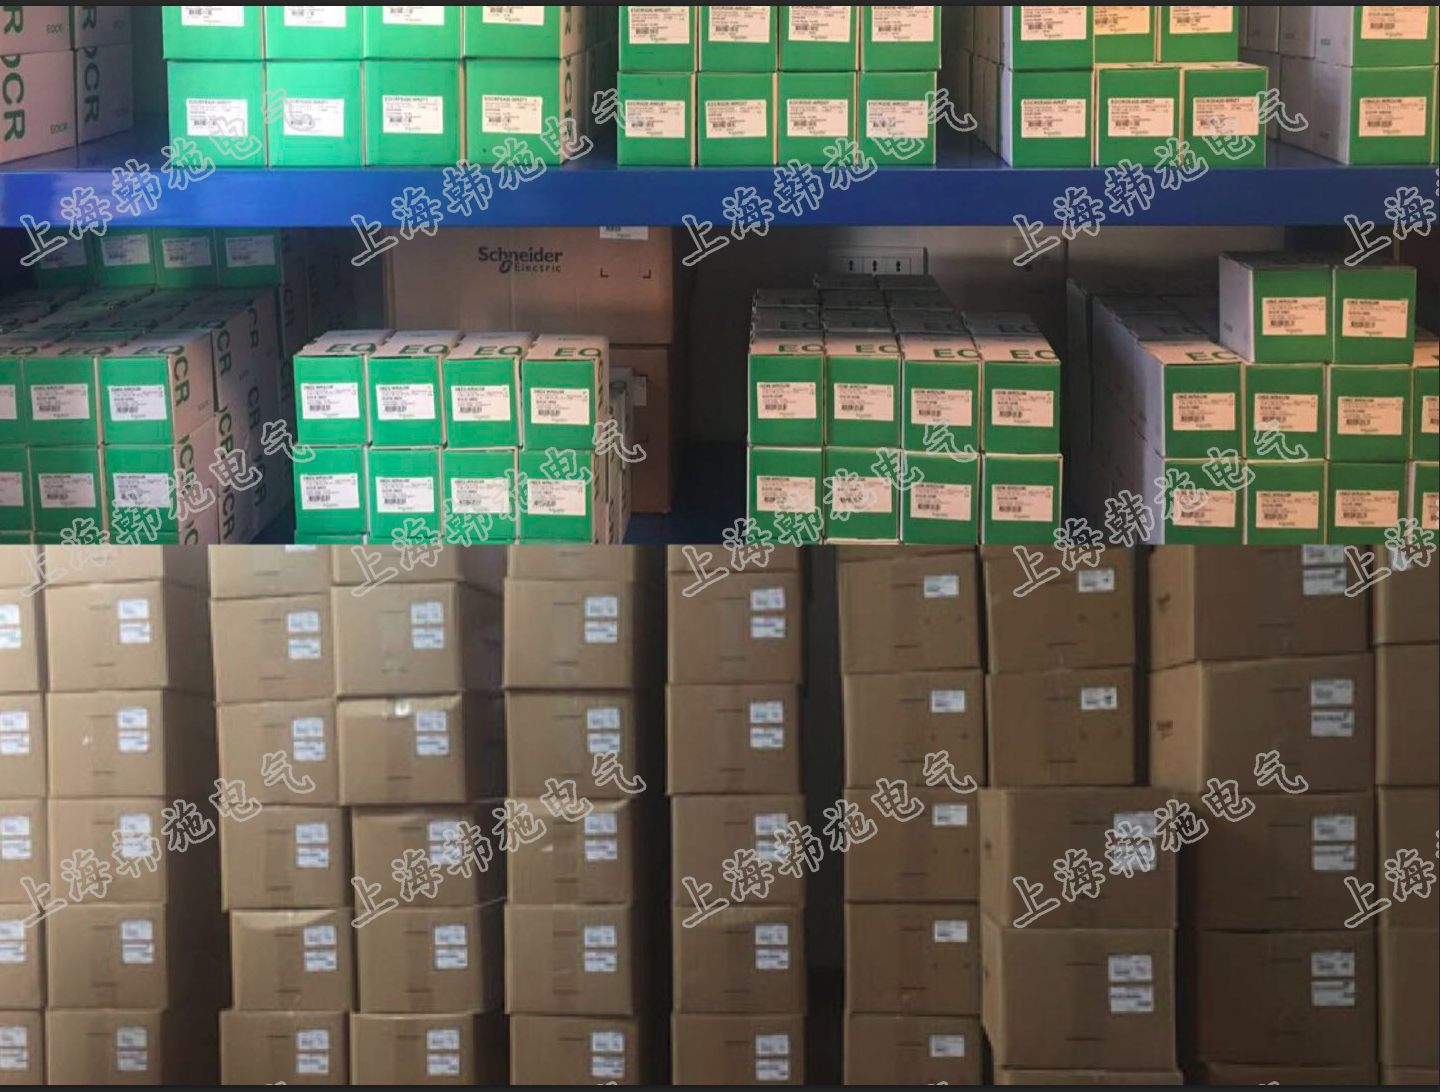 施耐德EOCR（原韩国三和）EVR-PD电子式电压保护器 施耐德,韩国三和,电压保护器,EOCR,电机保护器